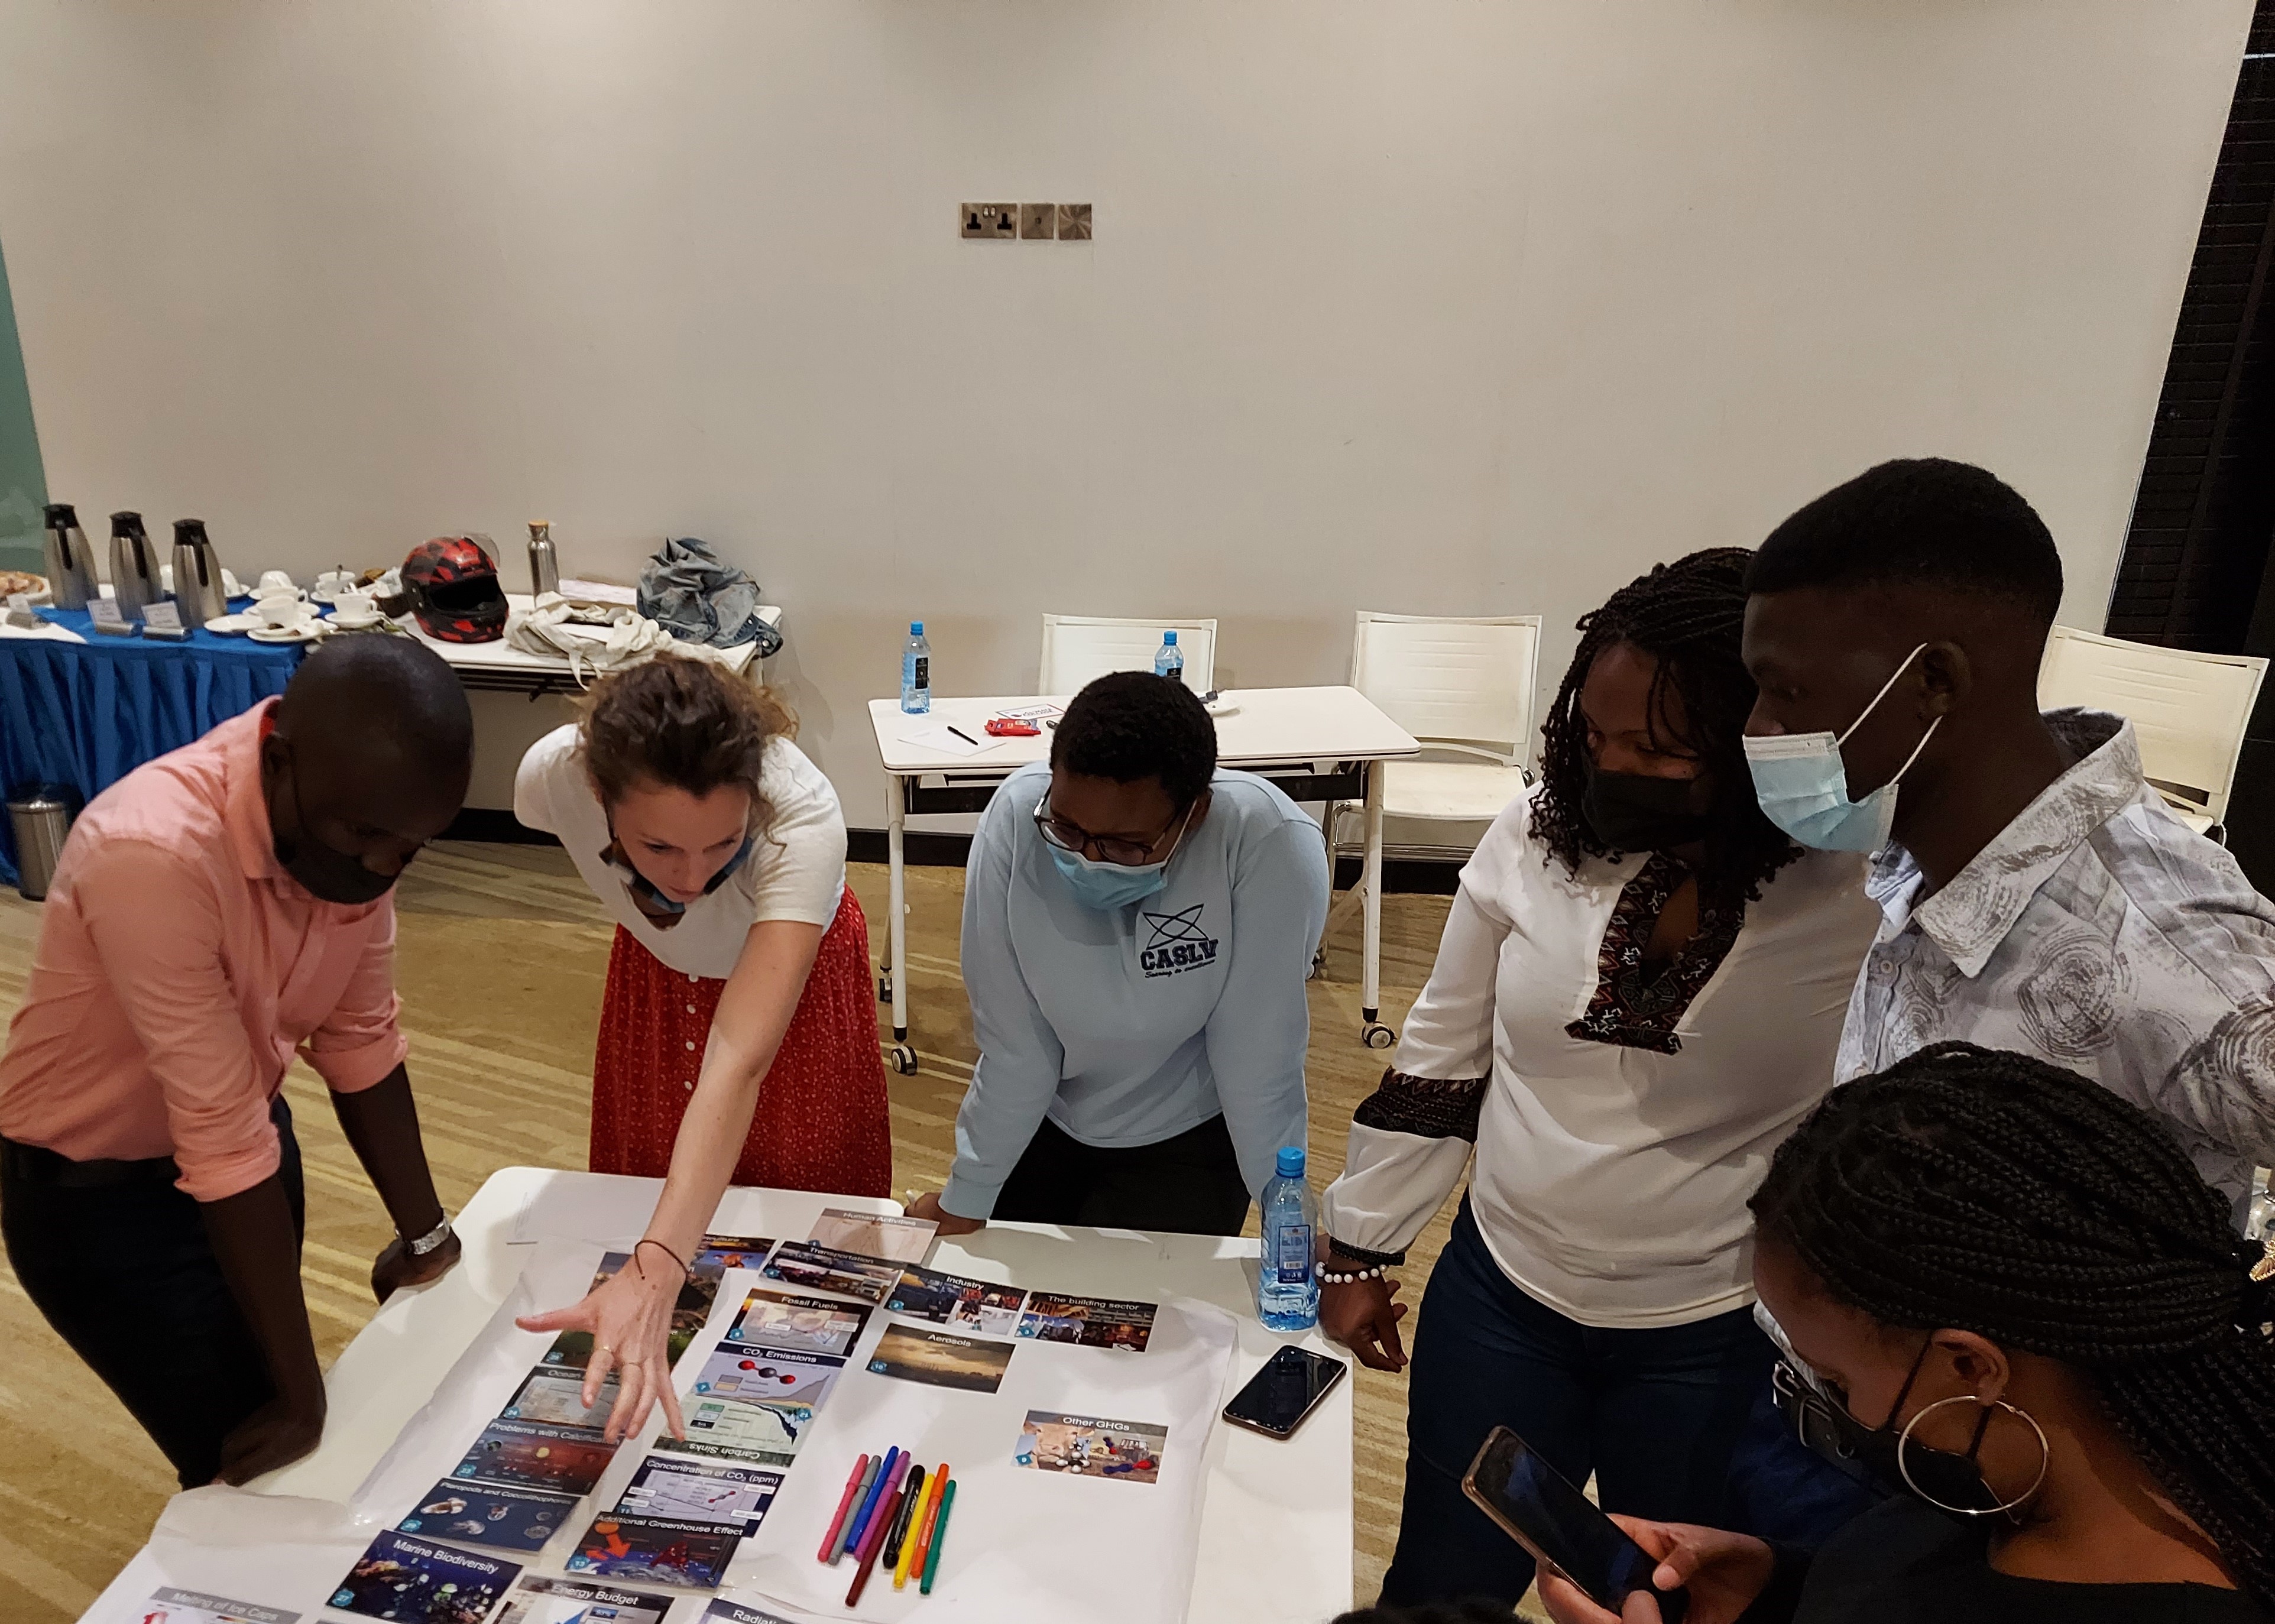 workshop participants study Climate Fresk cards